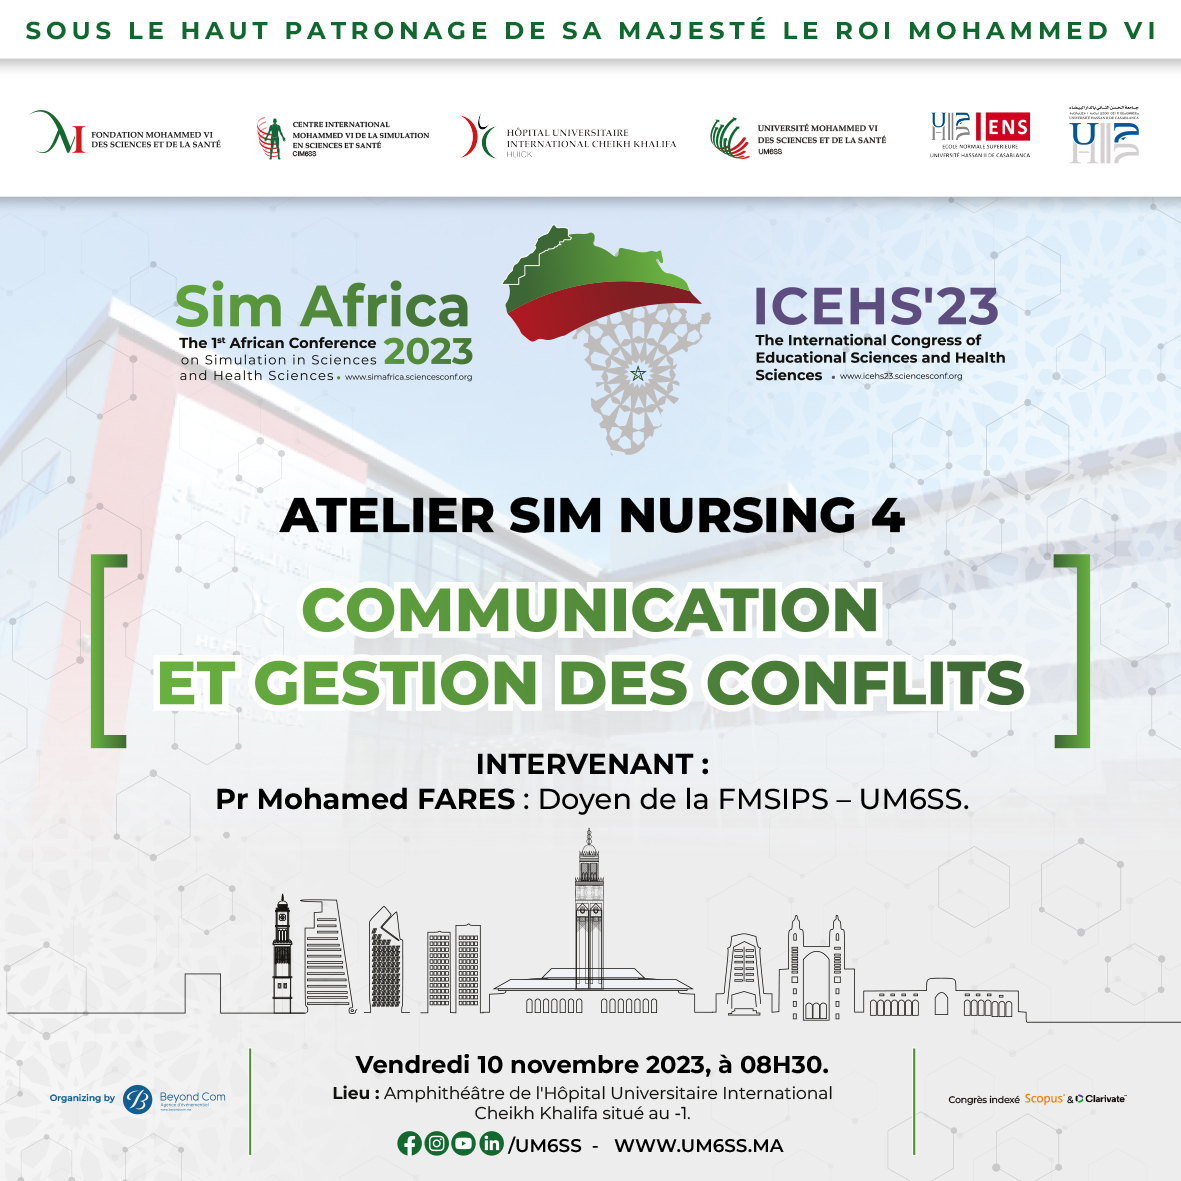 SIM AFRICA - ICEHS'2023 : COMMUNICATION ET GESTION DES CONFLITS